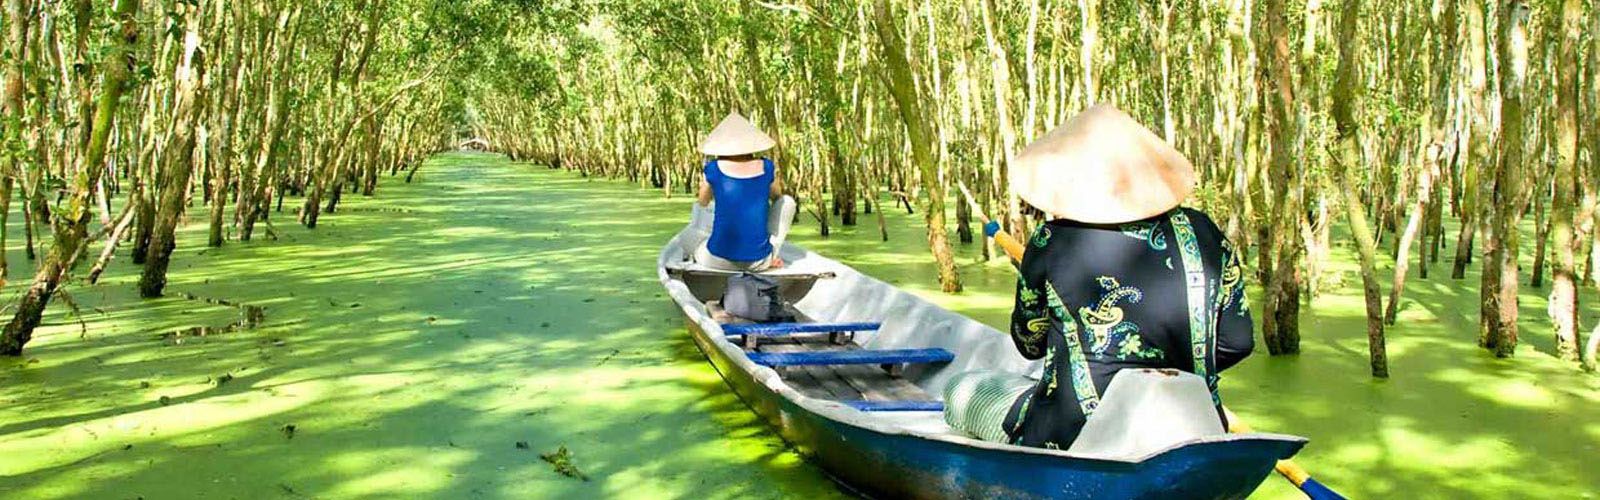 Vietnam And Cambodia Riverway Tour